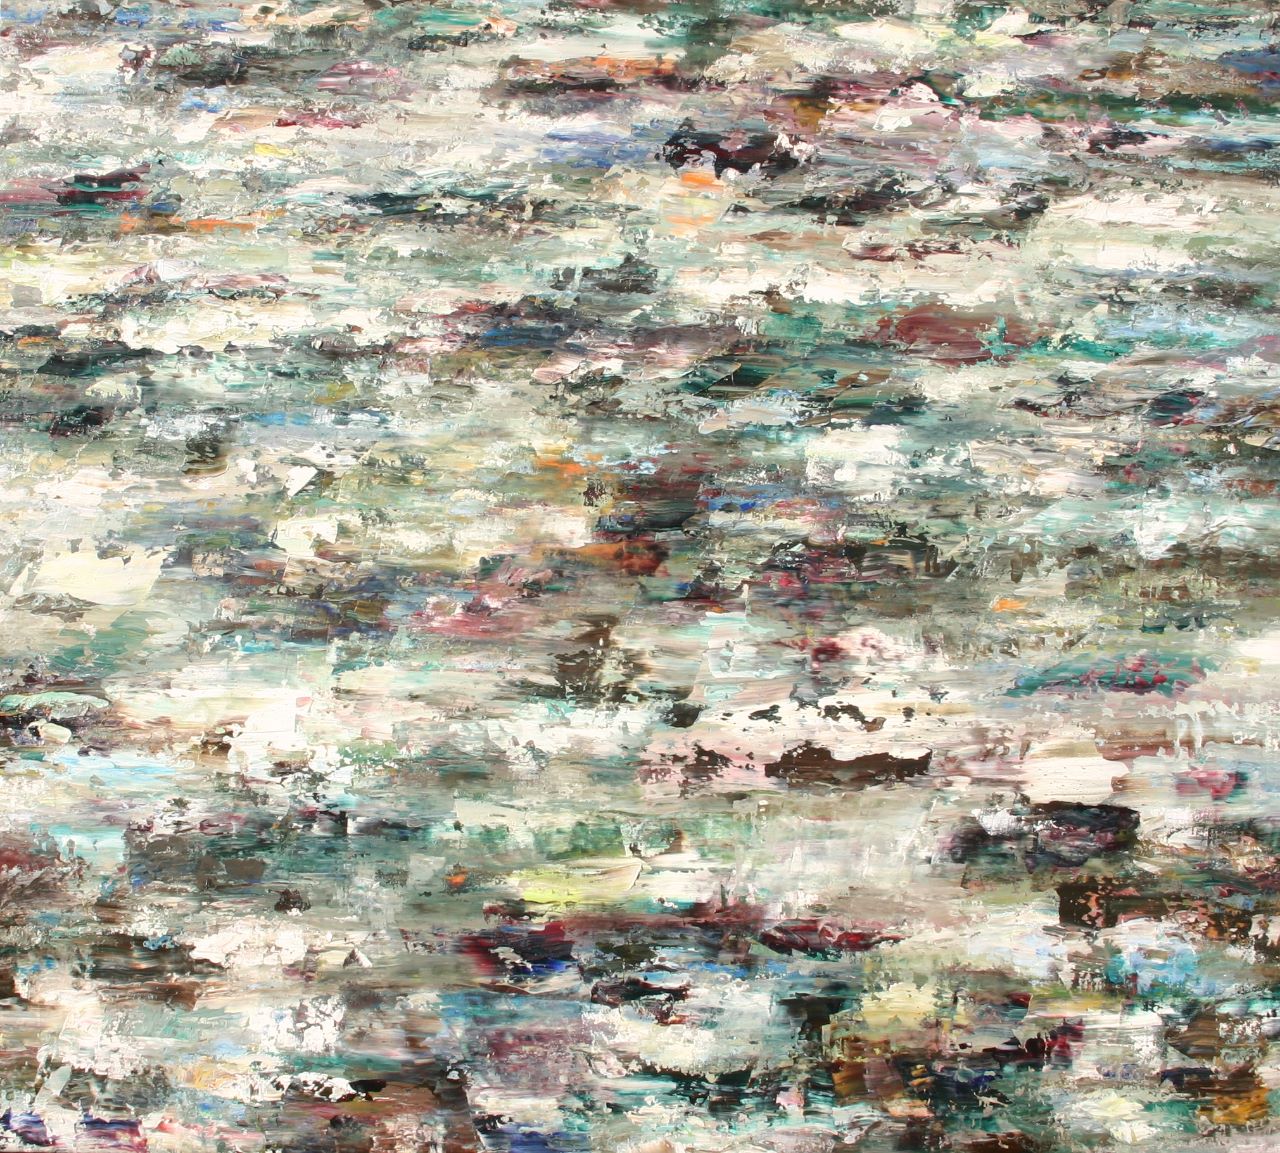 Rudi Weiss, Fluss, 26-2015, Öl auf Leinwand, 130 x 145 cm, Preis auf Anfrage, wer026kü, SüdWestGalerie